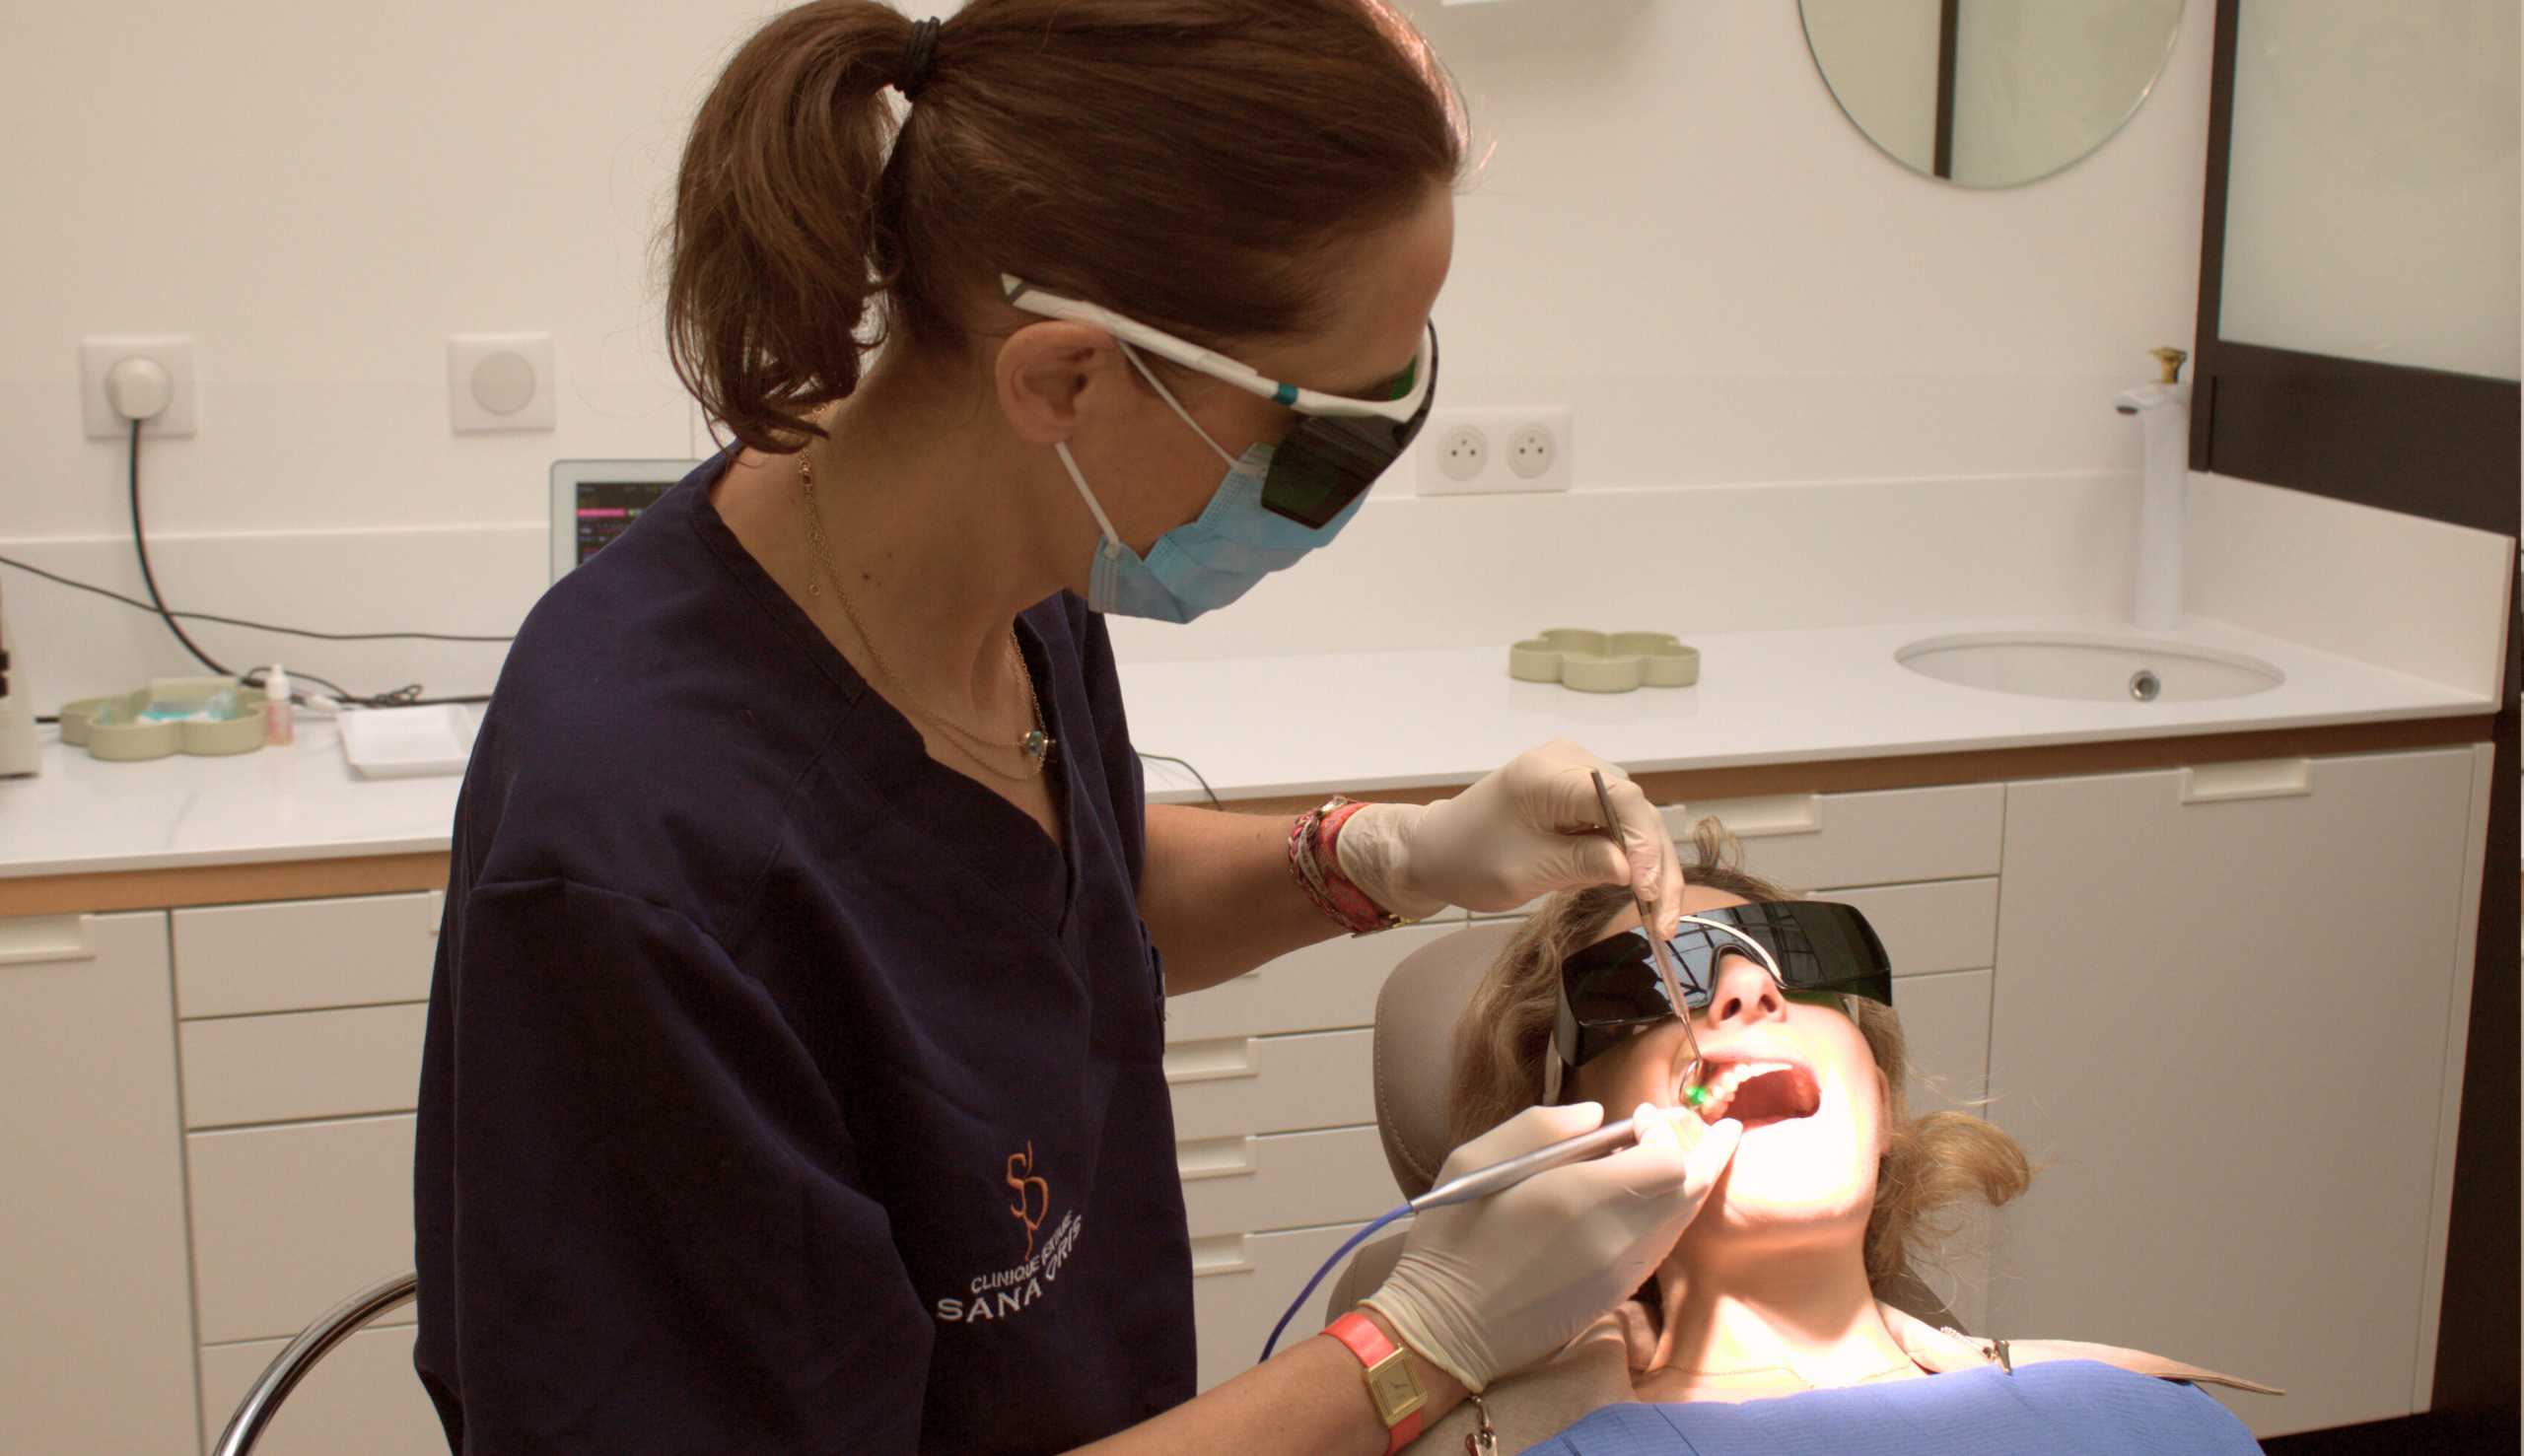 Comment soigner une inflammation de la gencive | Clinique dentaire Sana Oris | Paris